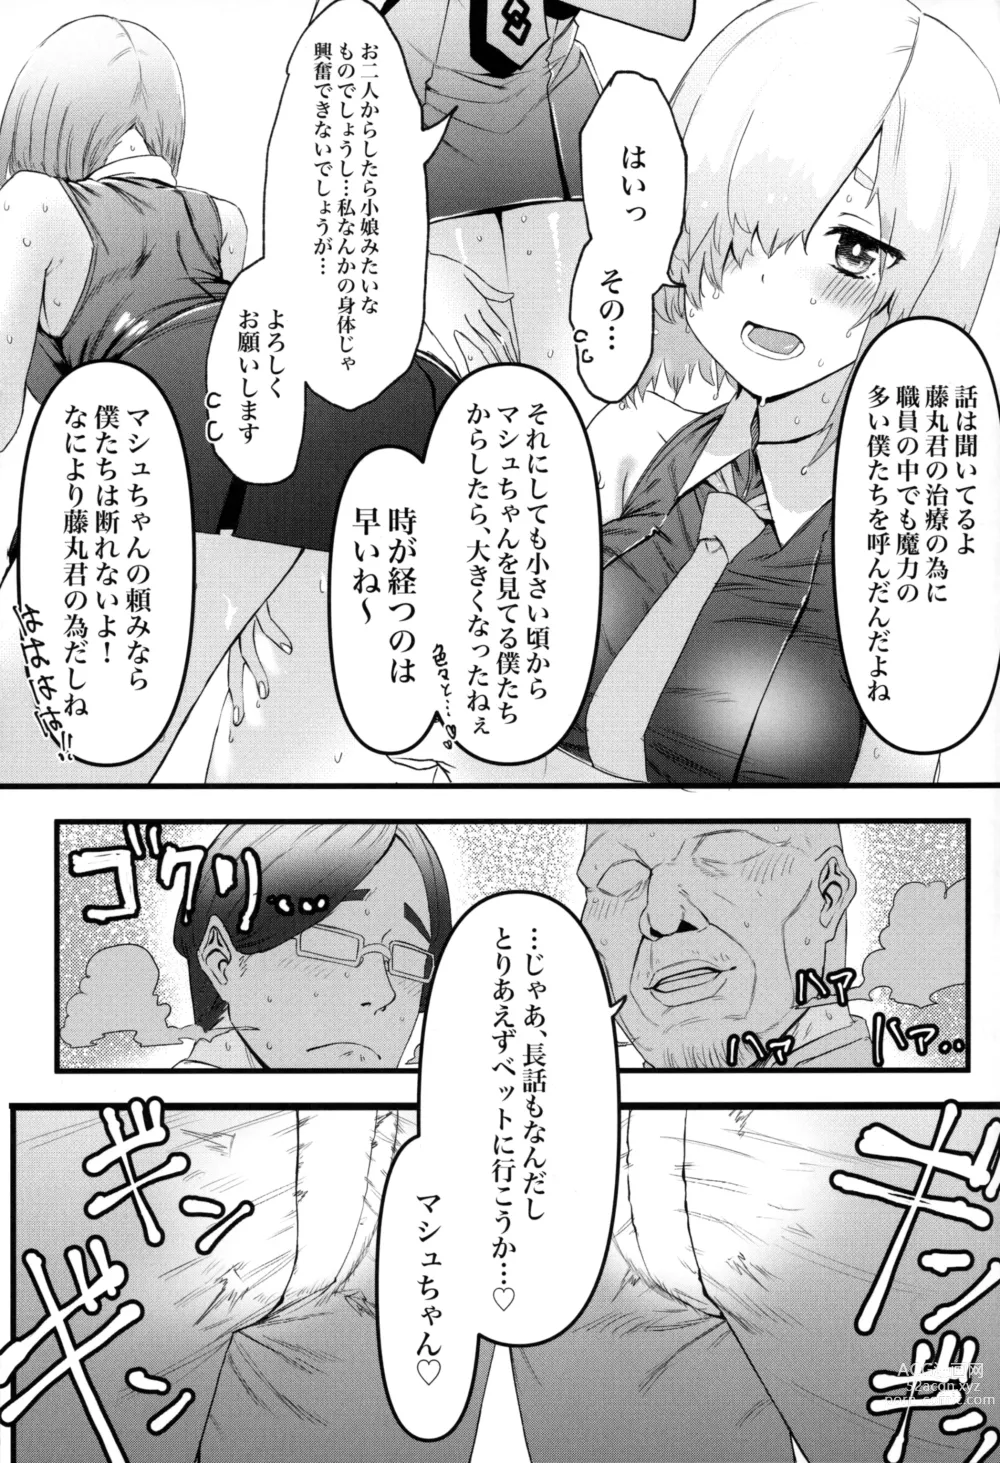 Page 8 of doujinshi Senpai no Tame ni NTR Mash!